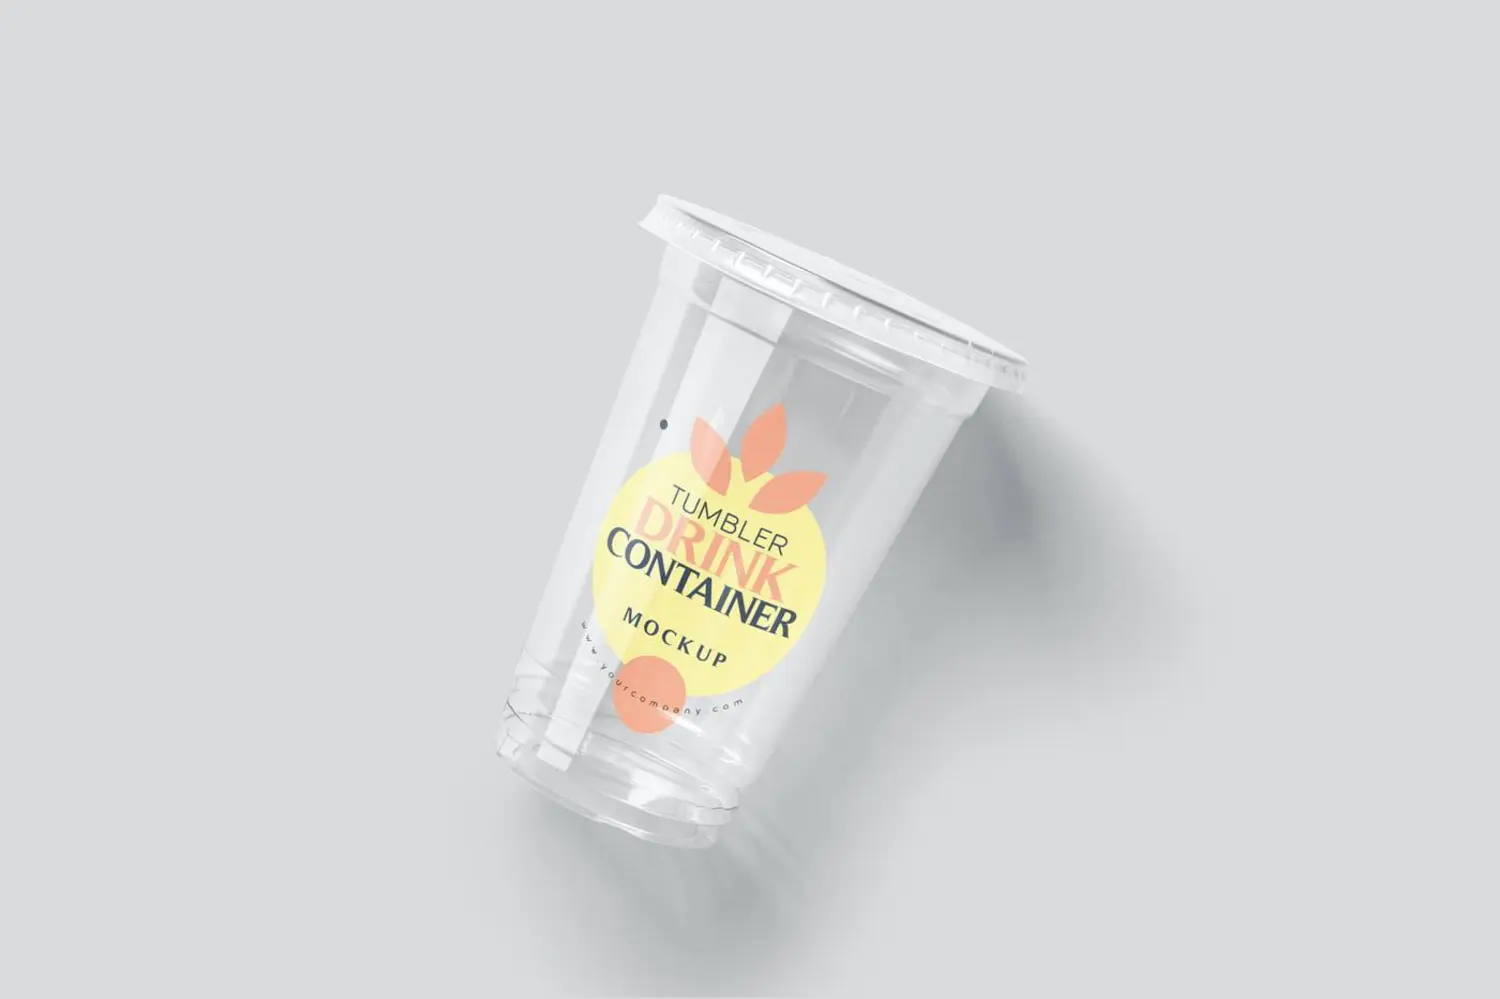 96 一次性饮料透明奶茶果汁饮品塑料杯样机psd模板 Tumbler Disposable Beverage Container Mockups